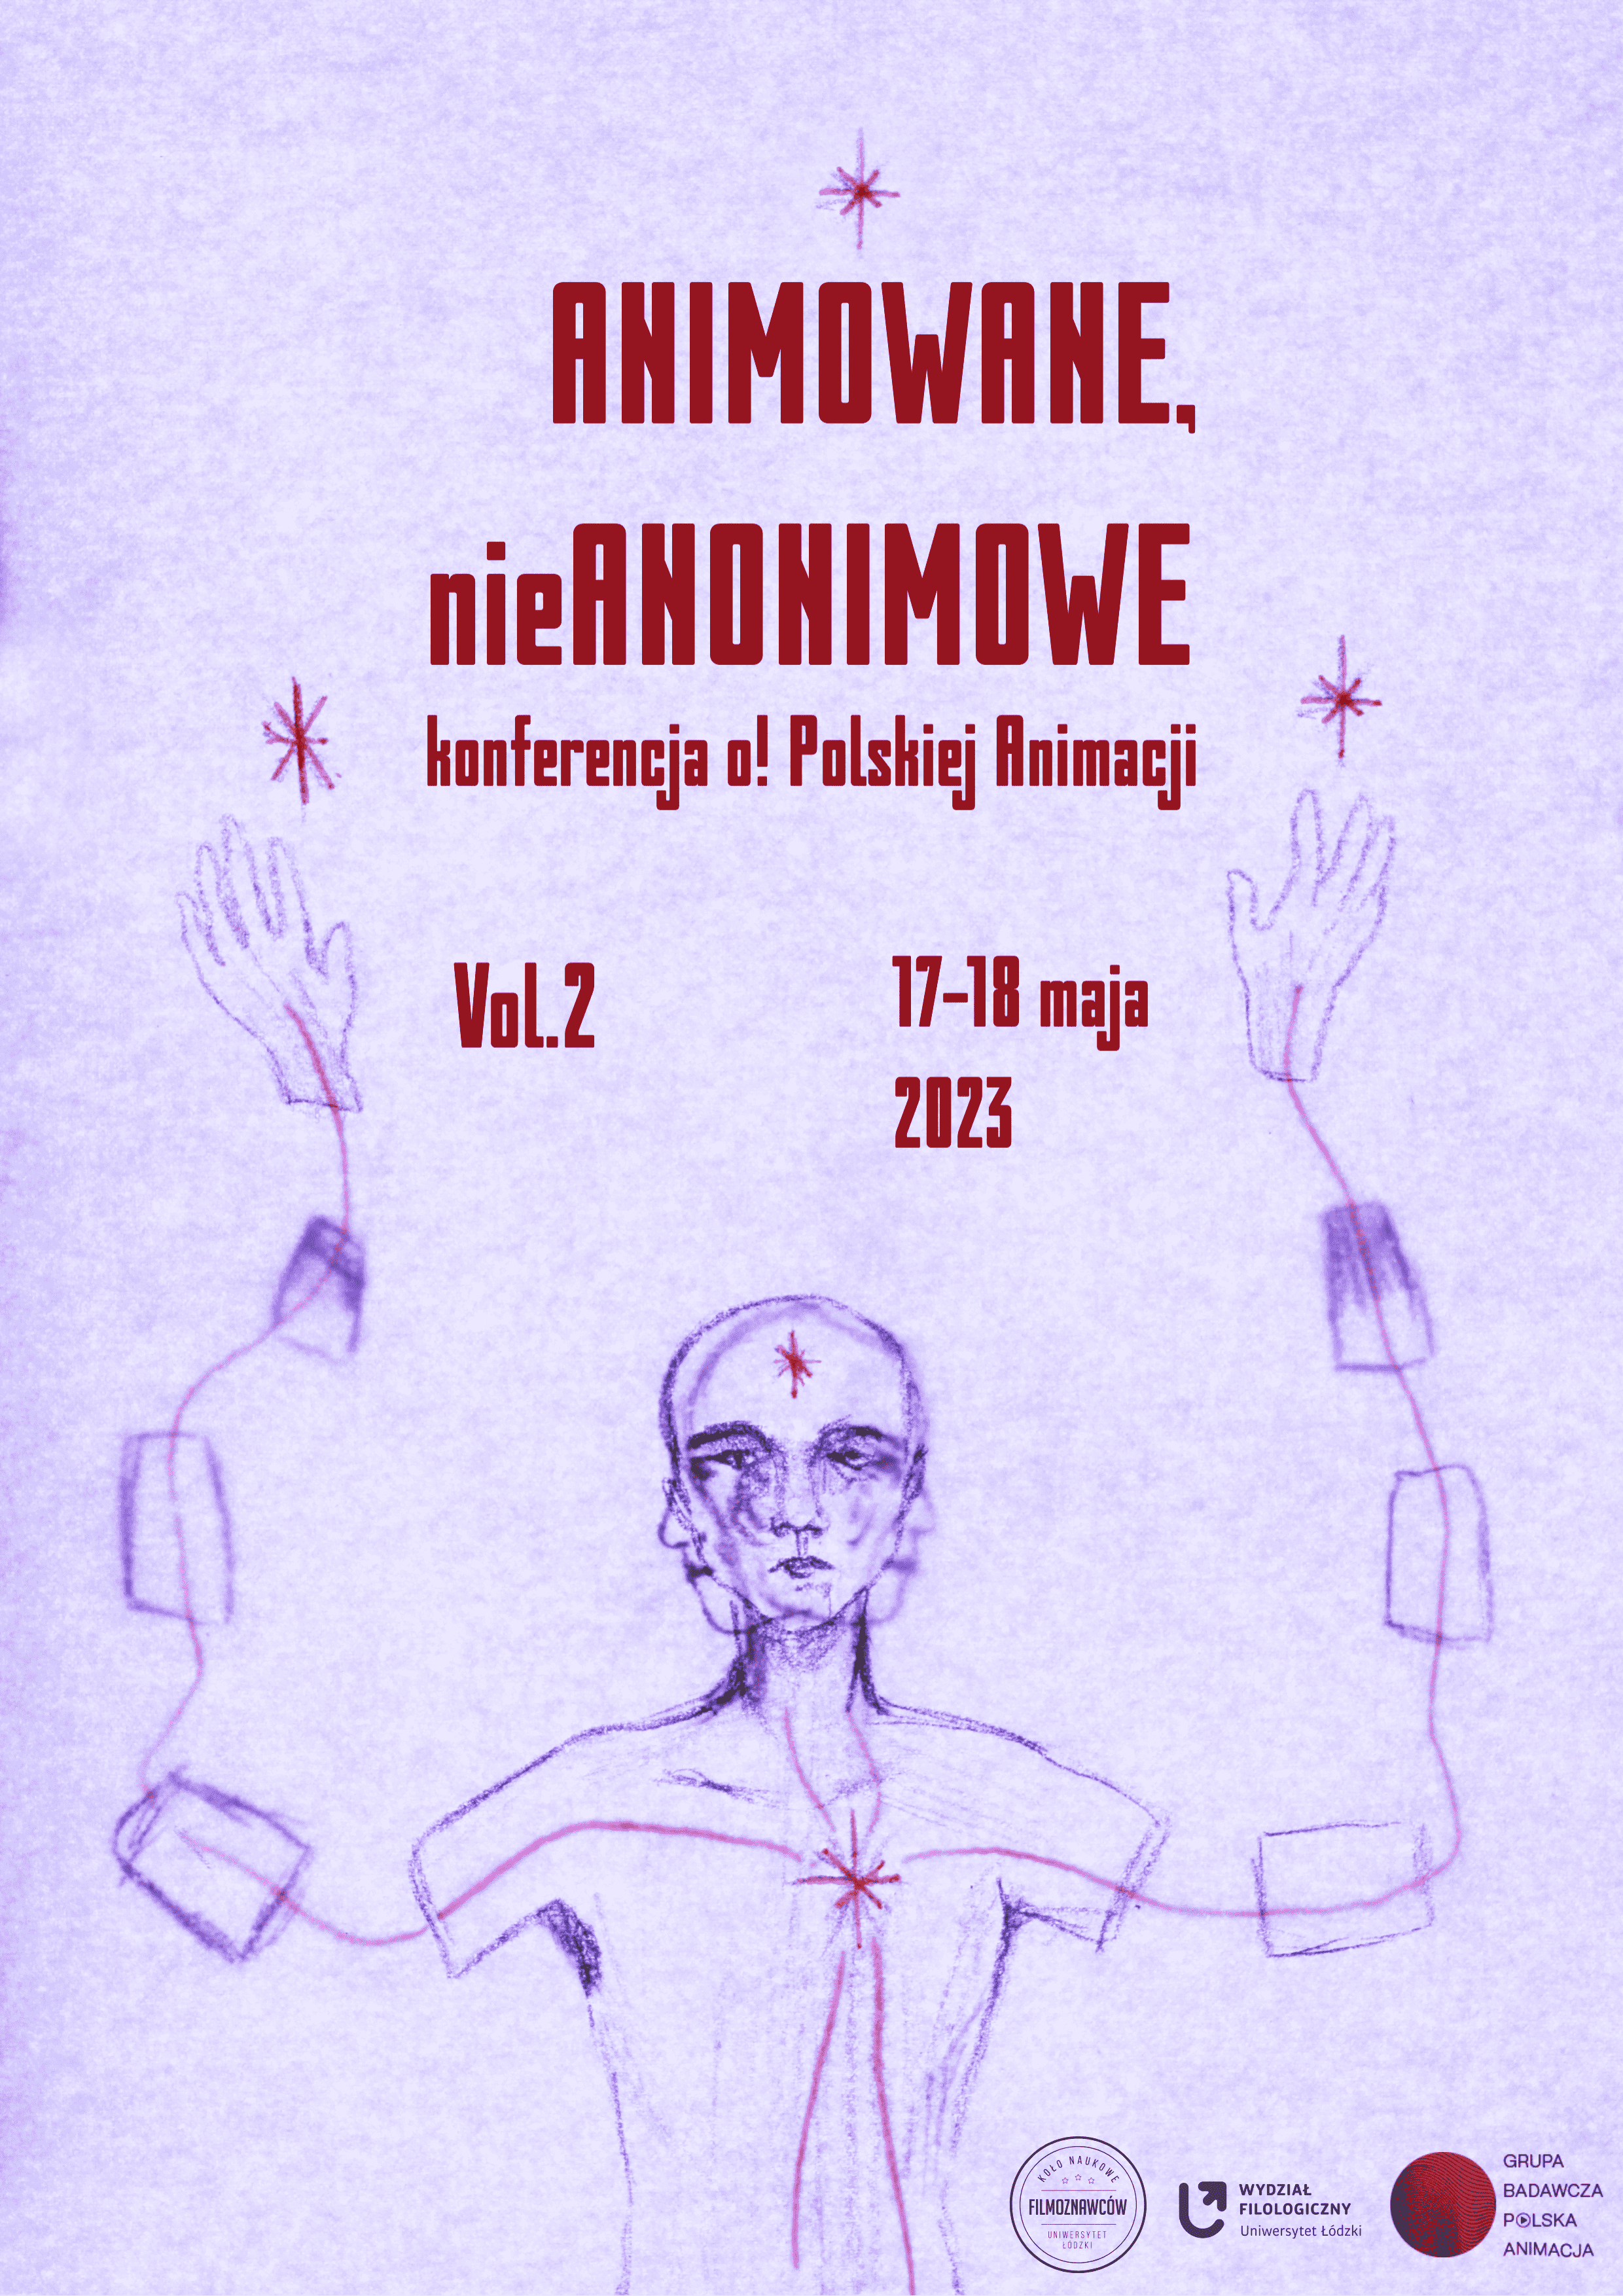 ANIMOWANE, nieANONIMOWE Konferencja o! Polskiej Animacji vol.2 17-18 maja 2023